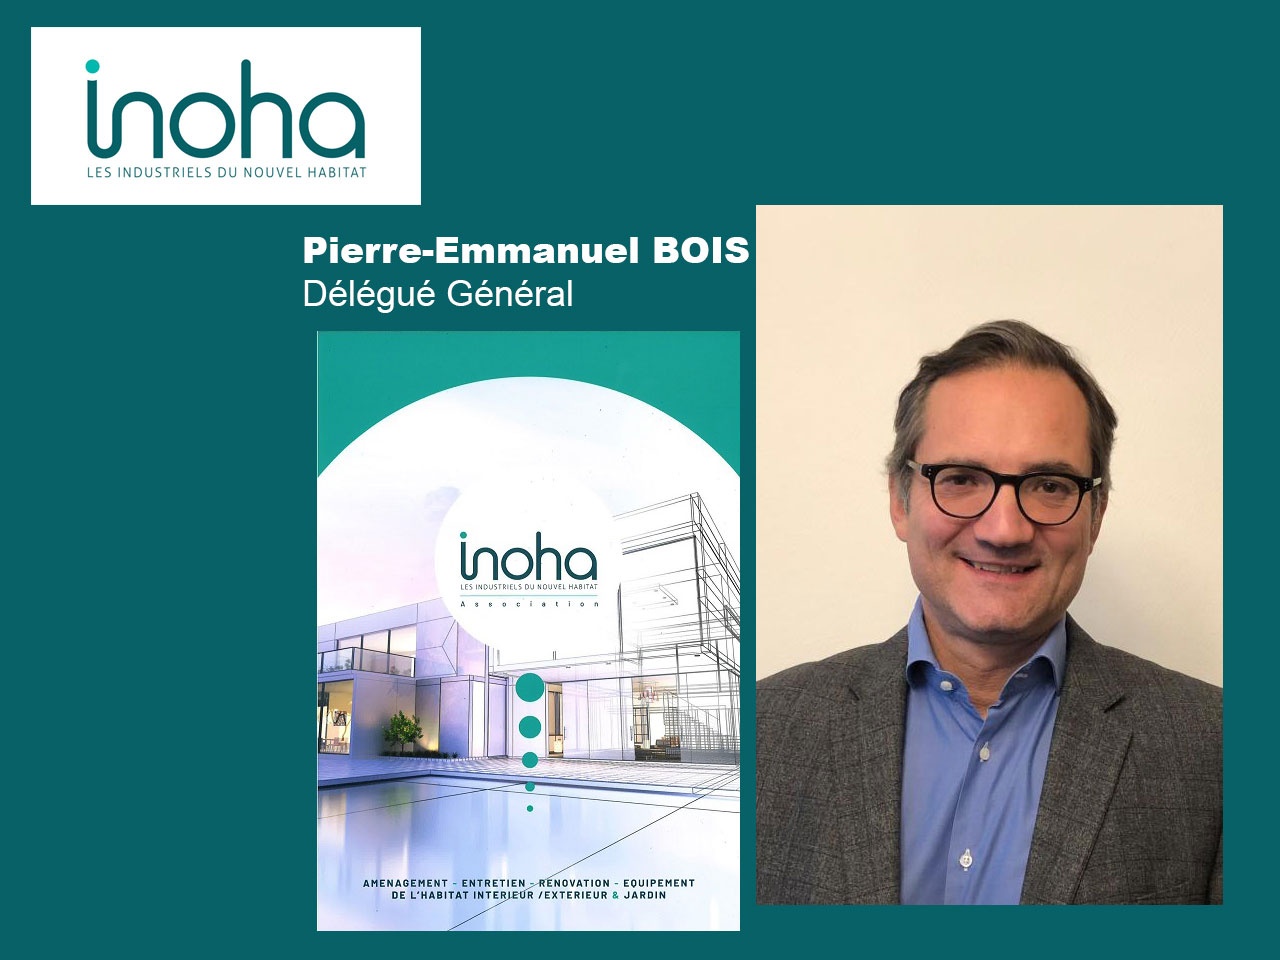 Inoha (Les industriels du Nouvel Habitat) présente Pierre-Emmanuel BOIS, son nouveau Délégué Général